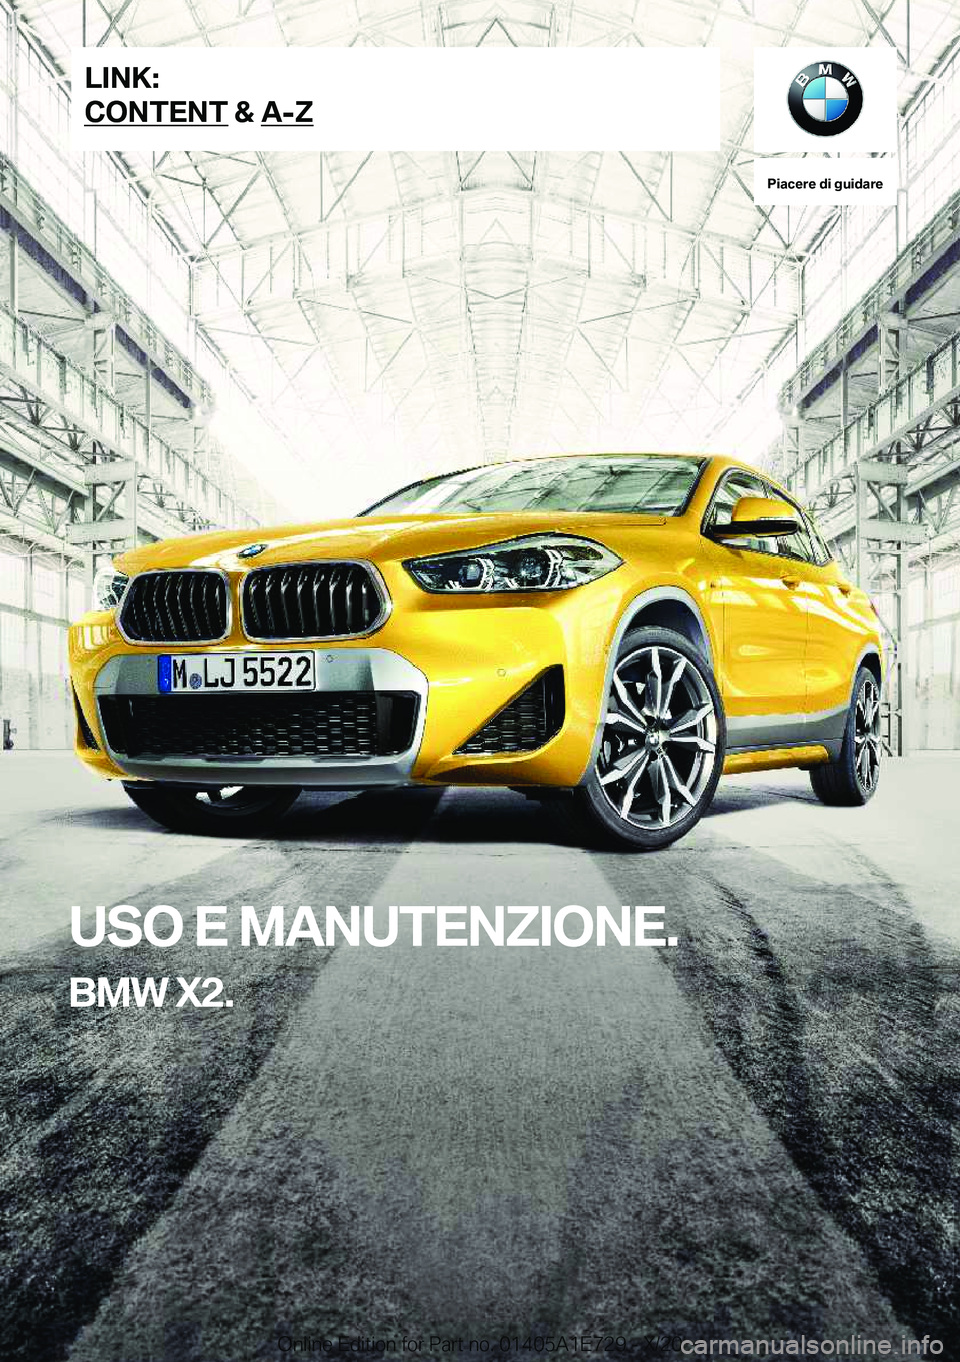 BMW X2 2021  Libretti Di Uso E manutenzione (in Italian) �P�i�a�c�e�r�e��d�i��g�u�i�d�a�r�e
�U�S�O��E��M�A�N�U�T�E�N�Z�I�O�N�E�.
�B�M�W��X�2�.�L�I�N�K�:
�C�O�N�T�E�N�T��&��A�-�Z�O�n�l�i�n�e��E�d�i�t�i�o�n��f�o�r��P�a�r�t��n�o�.��0�1�4�0�5�A�1�E�